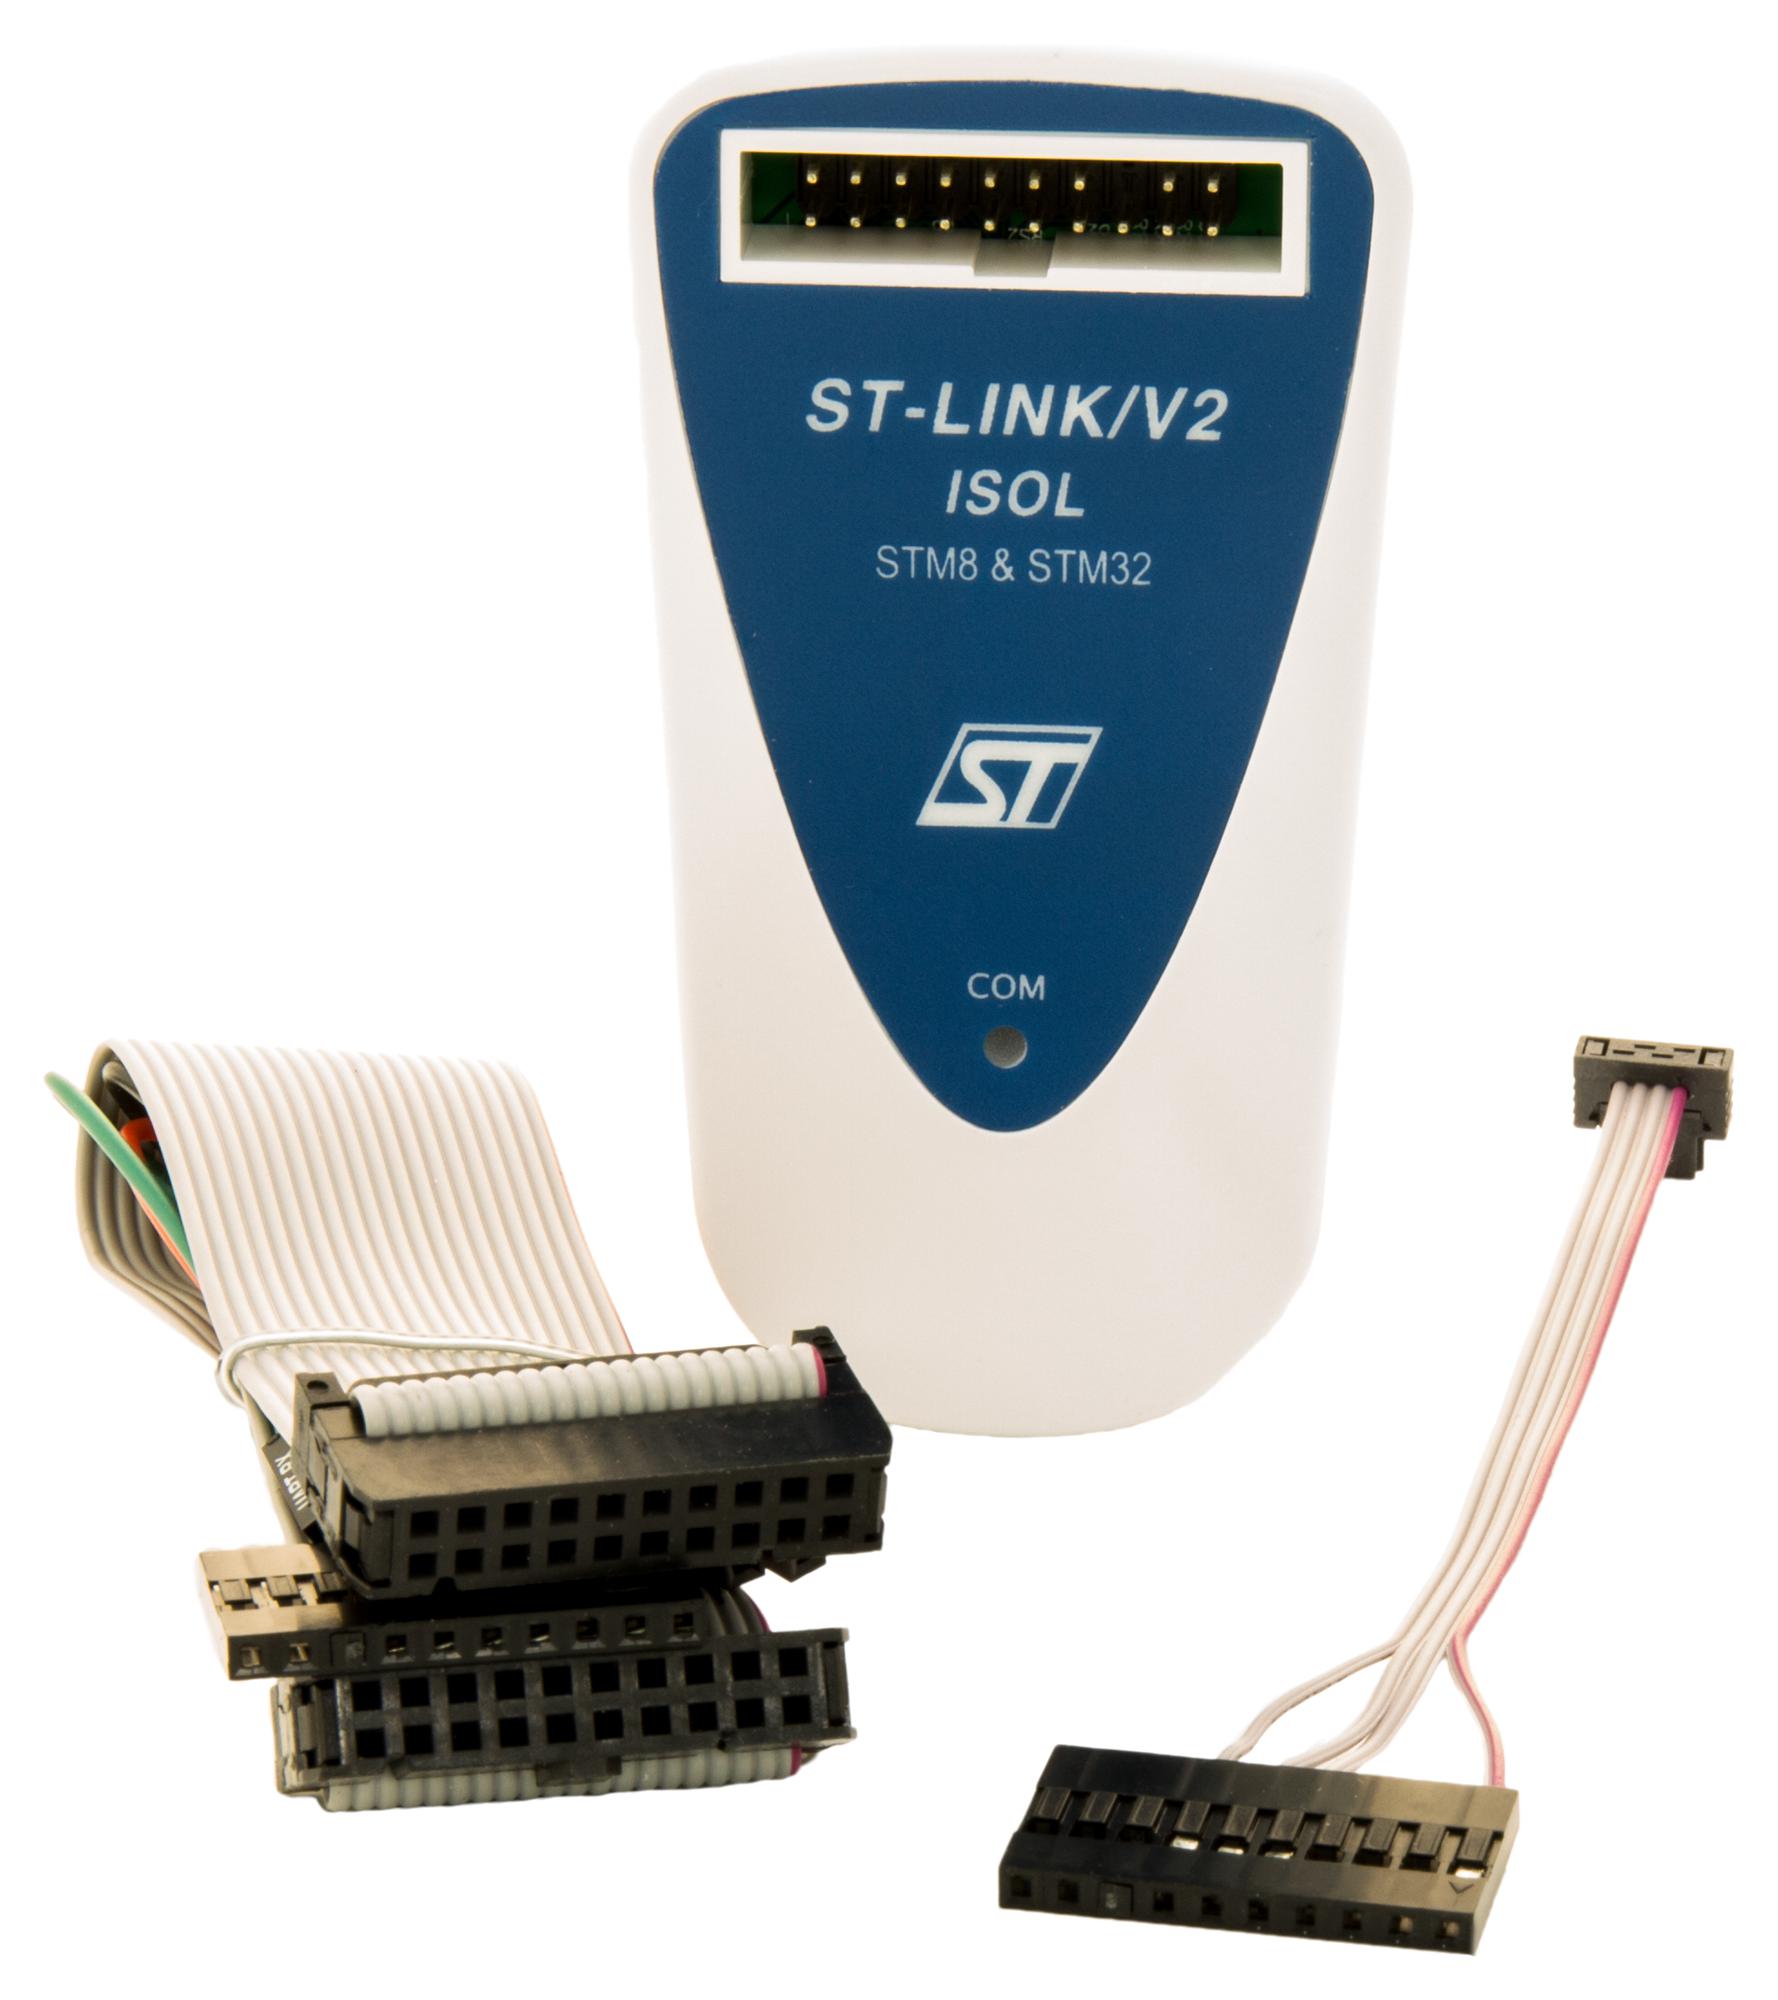 ST-LINK/V2-ISOL DEBUGGER/PROGRAMMER, STM8, STM32 MCU STMICROELECTRONICS